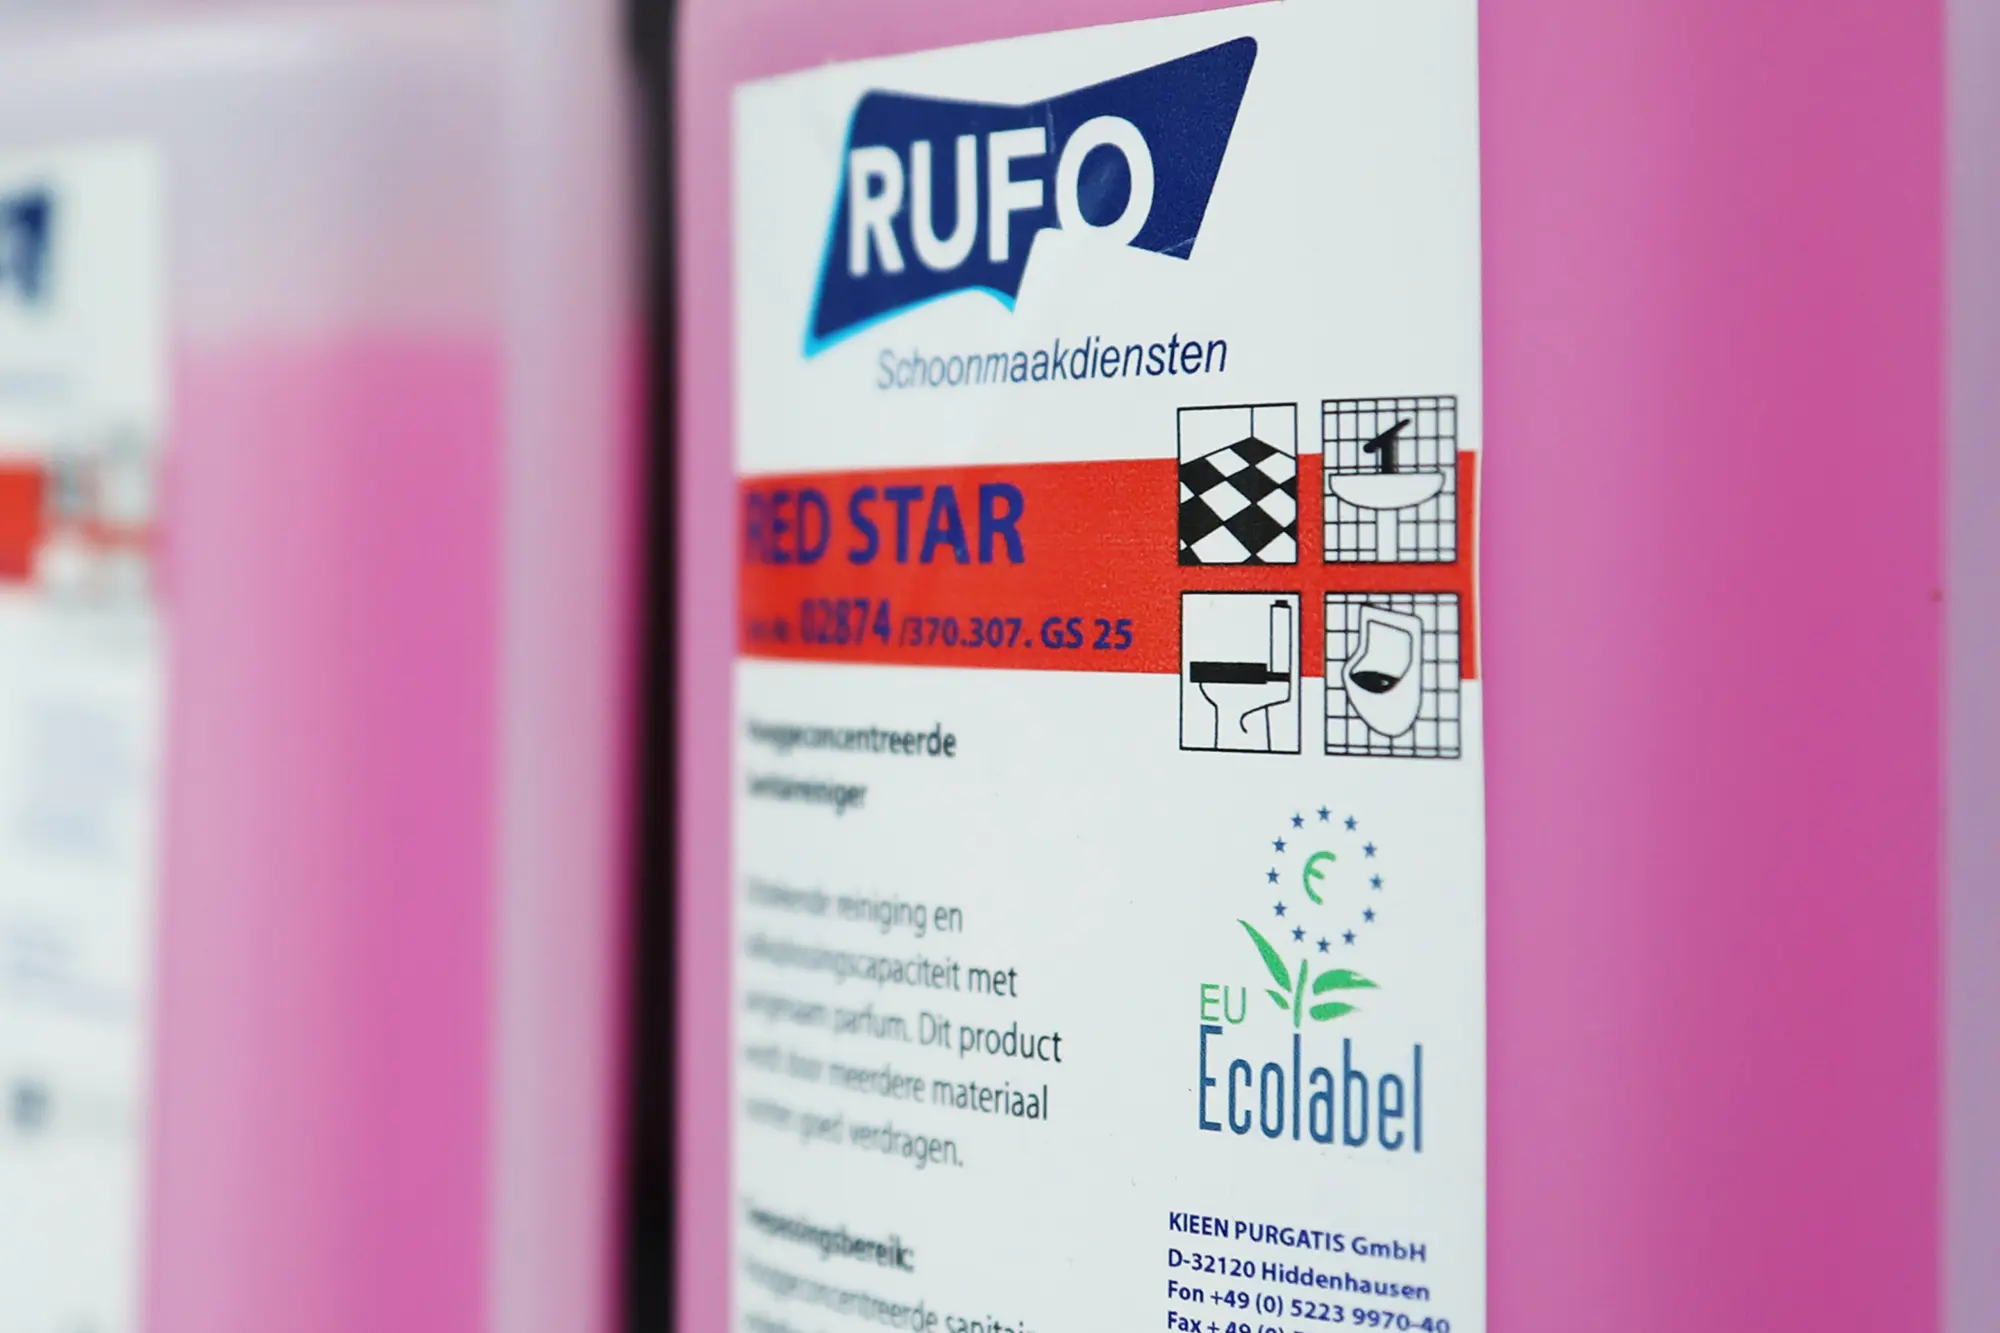 Een schoonmaakproduct van RUFO met eco label